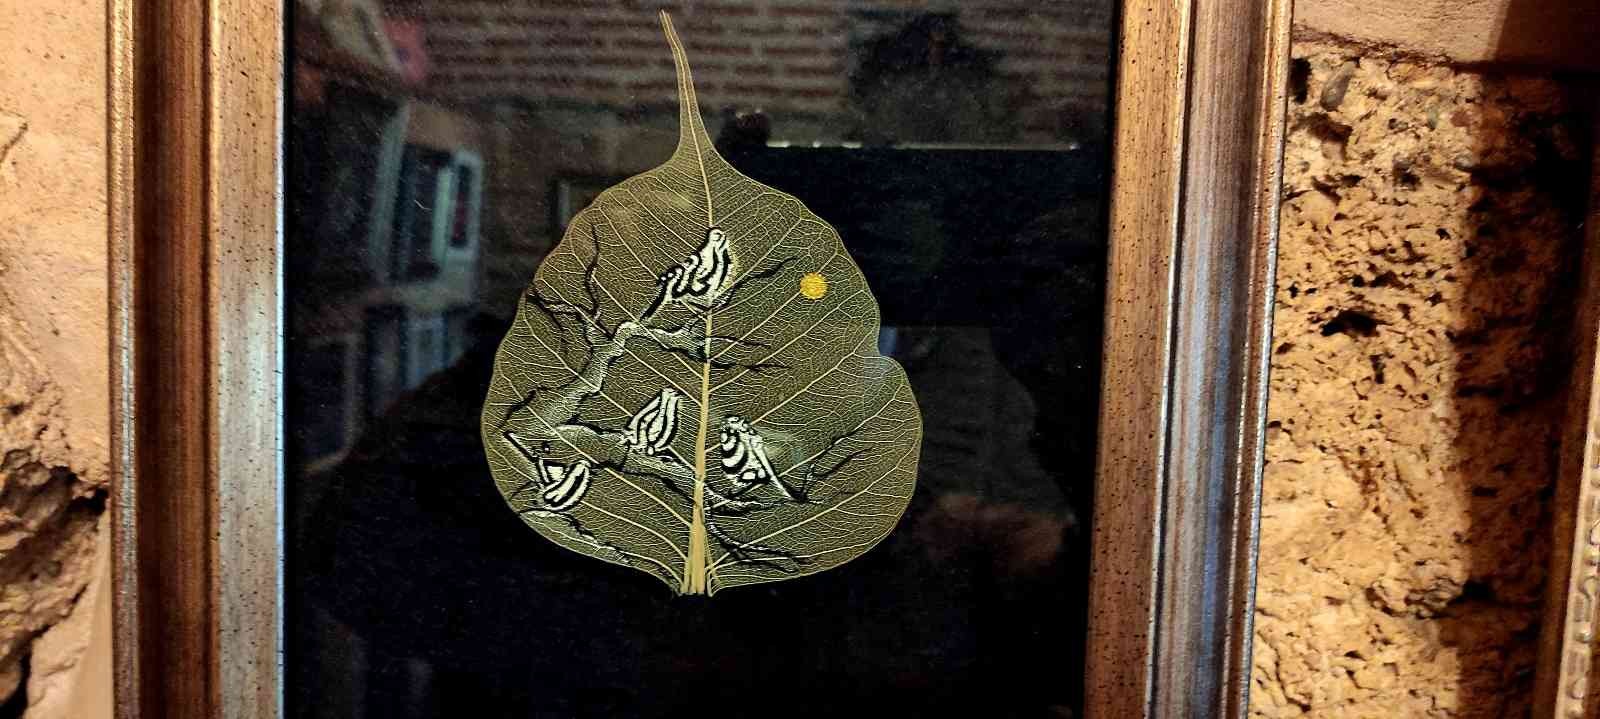 Bursa’da kendi başına öğrendiği sanatla ortaya mükemmel eserler çıkaran usta, kurutulmuş yaprakların üzerine hat ve minyatür çalışması yaparak ...